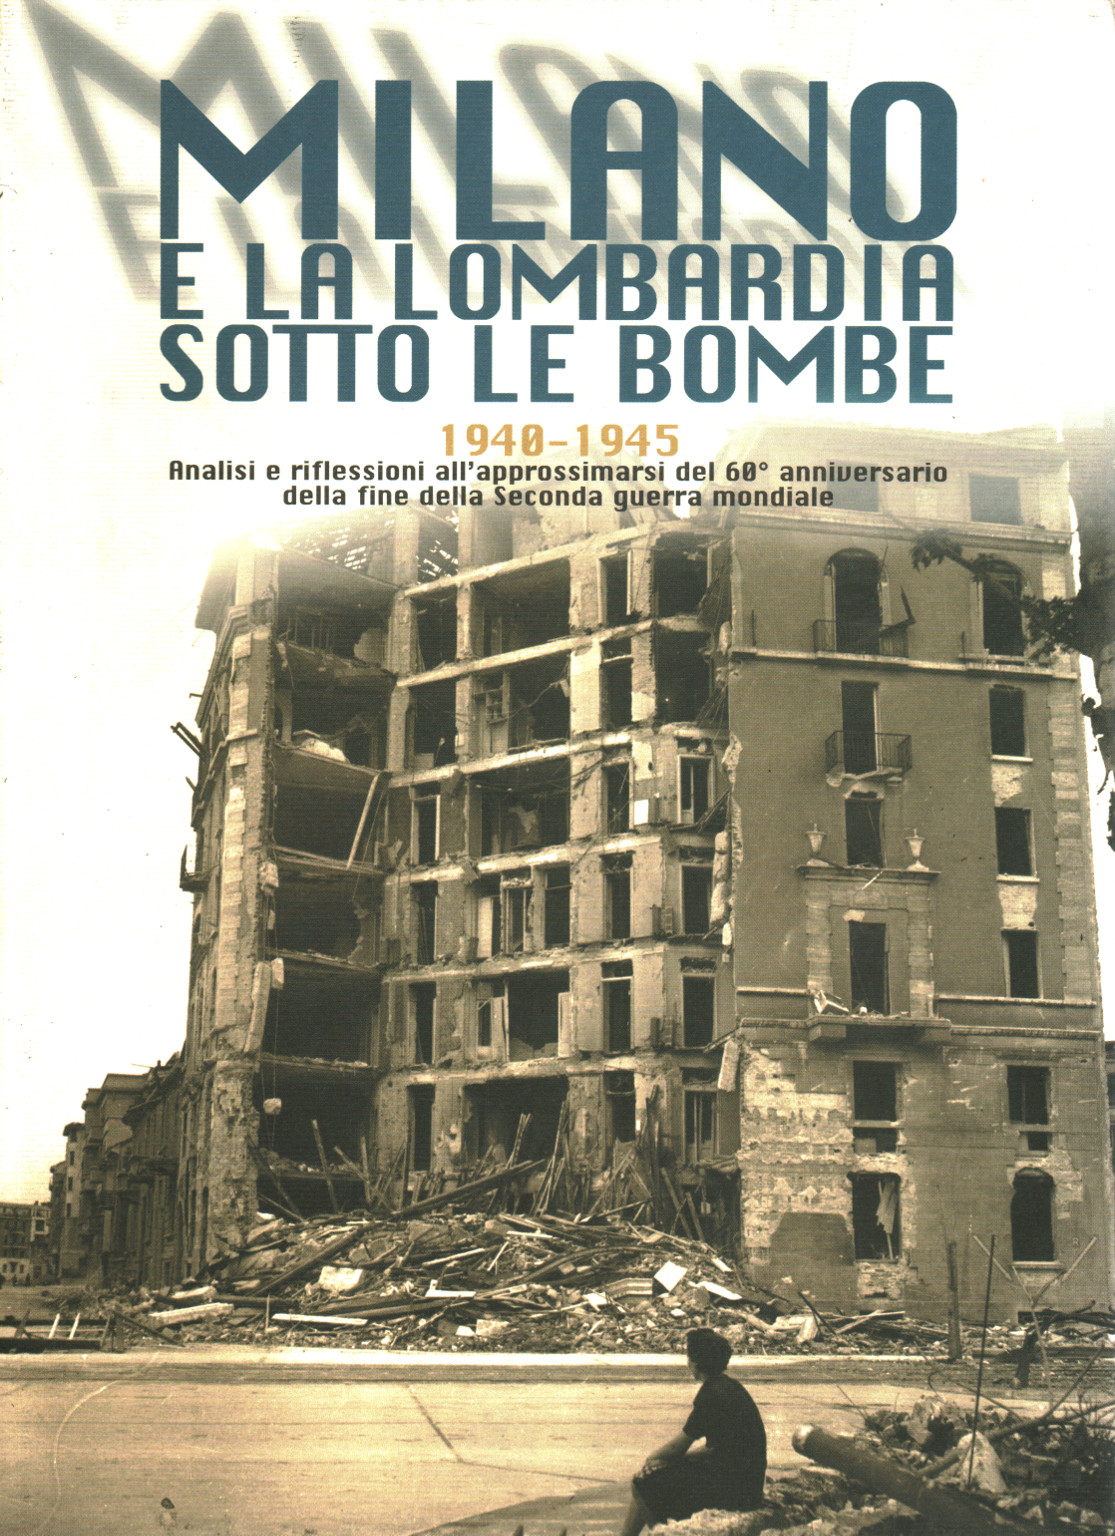 Milano e la Lombardia sotto le bombe 1940-1945, s.a.